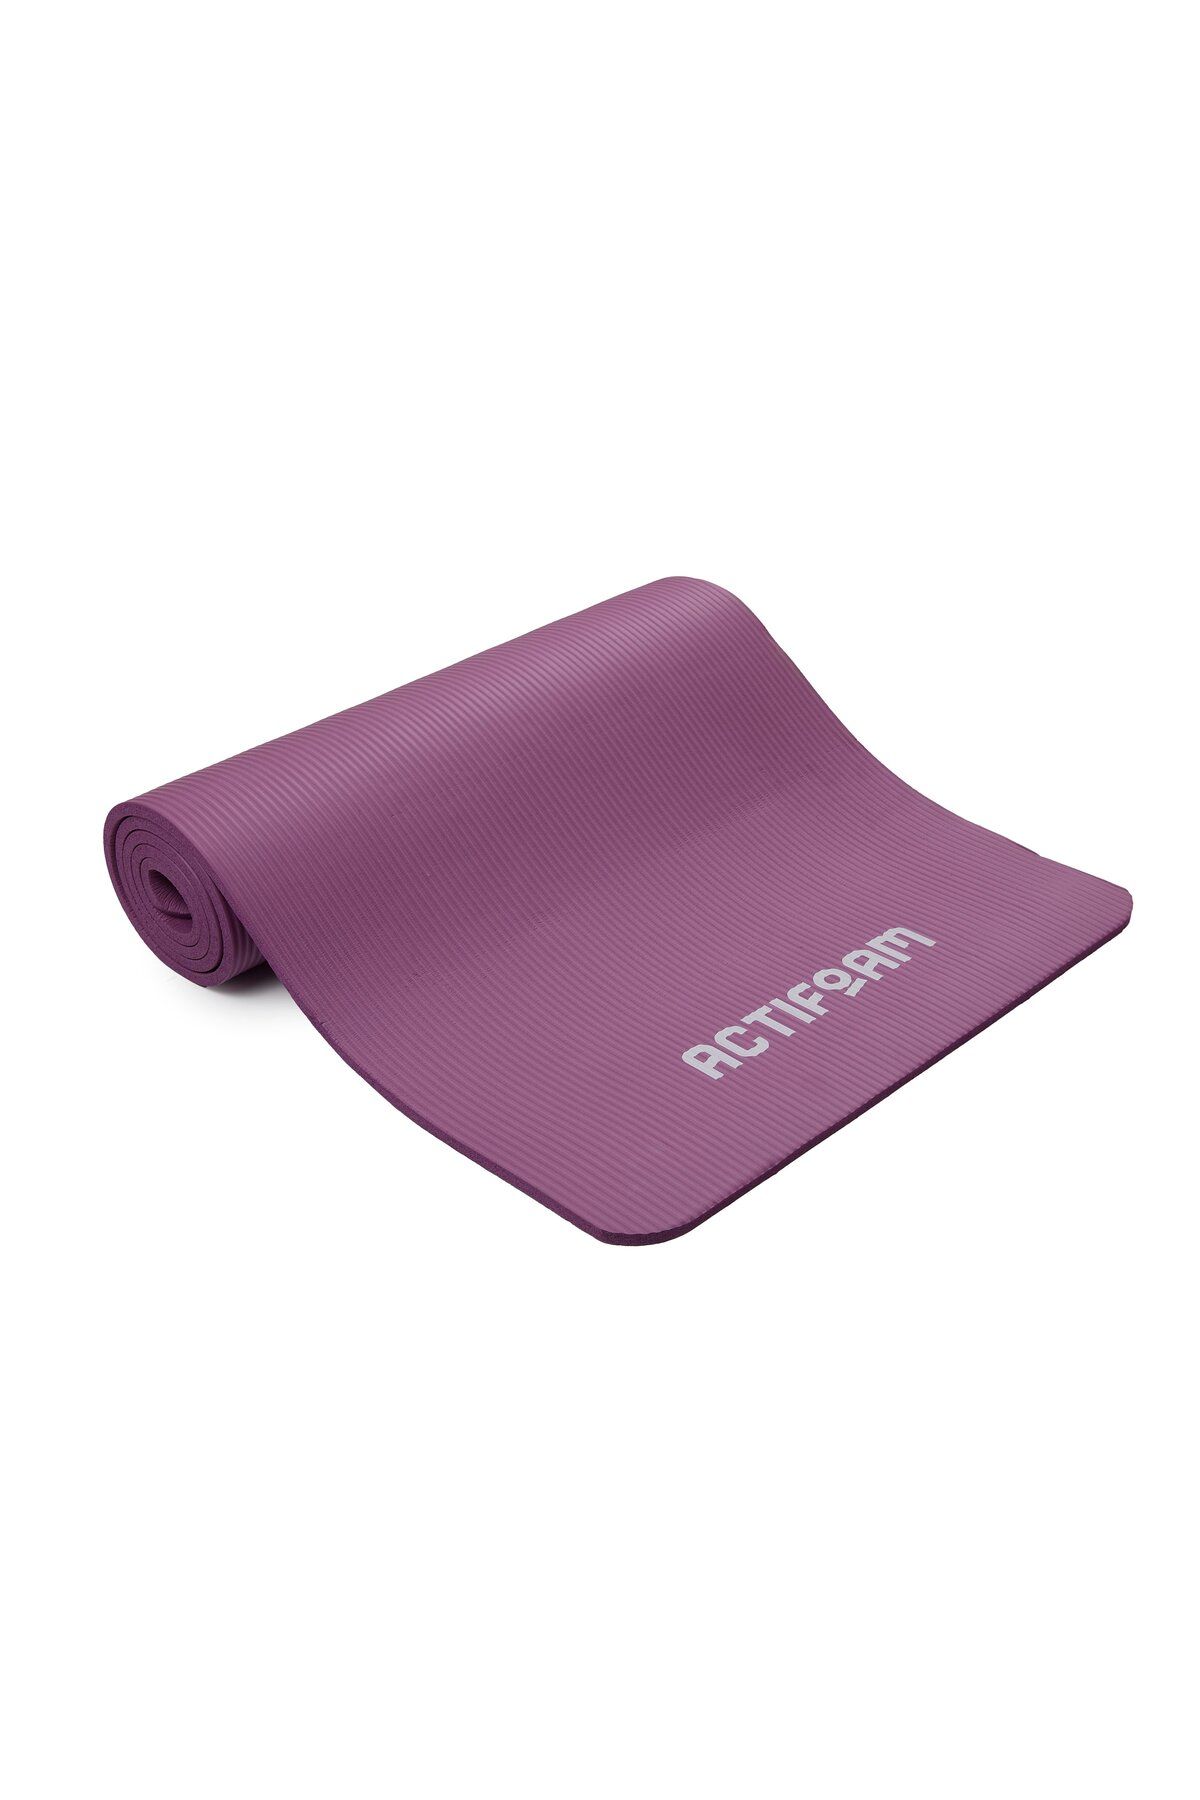 Actifoam Pilates Ve Yoga Matı 10mm